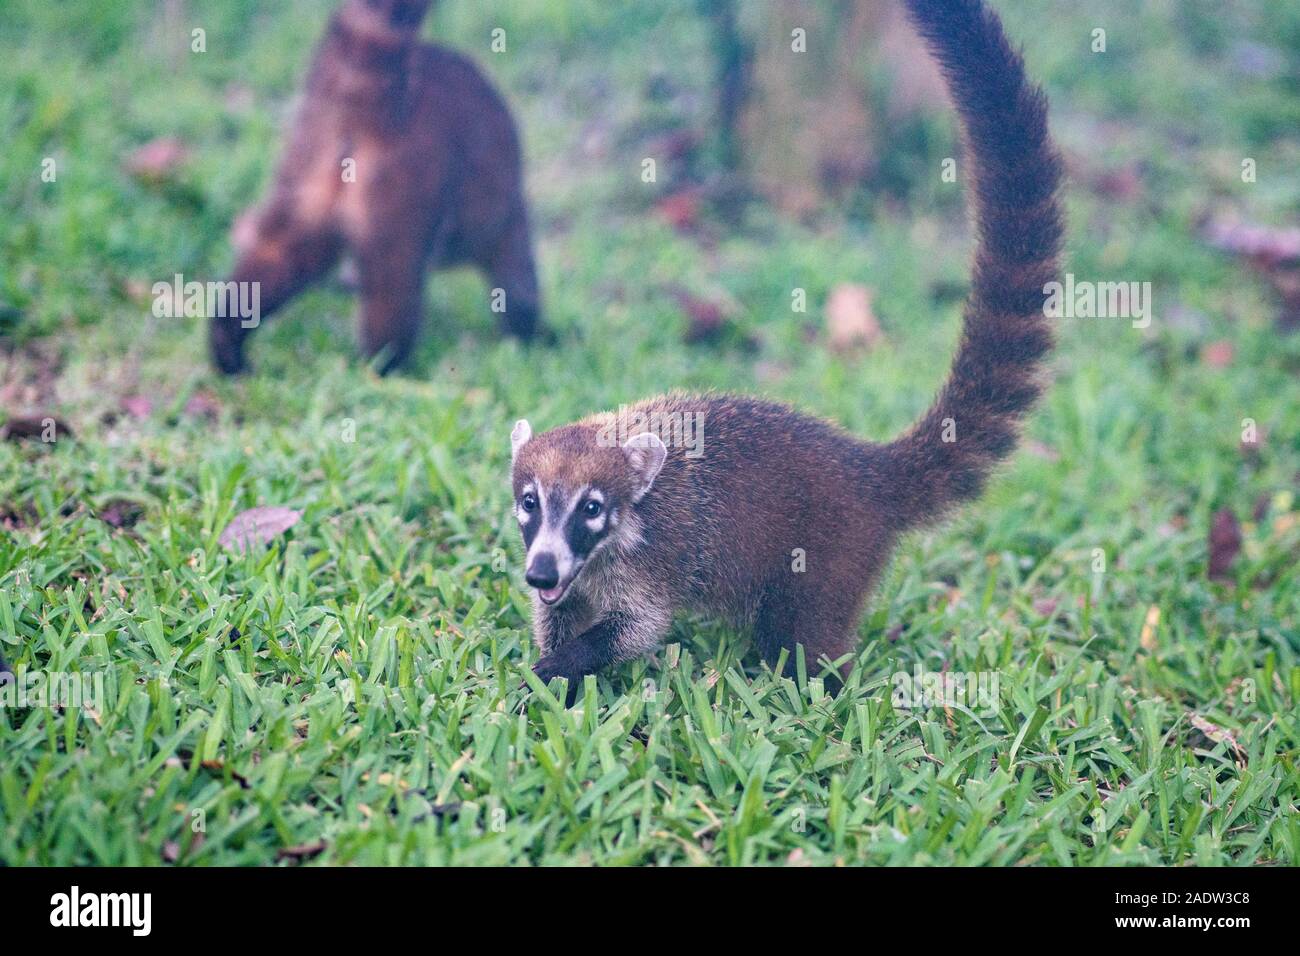 Coati jugando en hierba en México Foto de stock